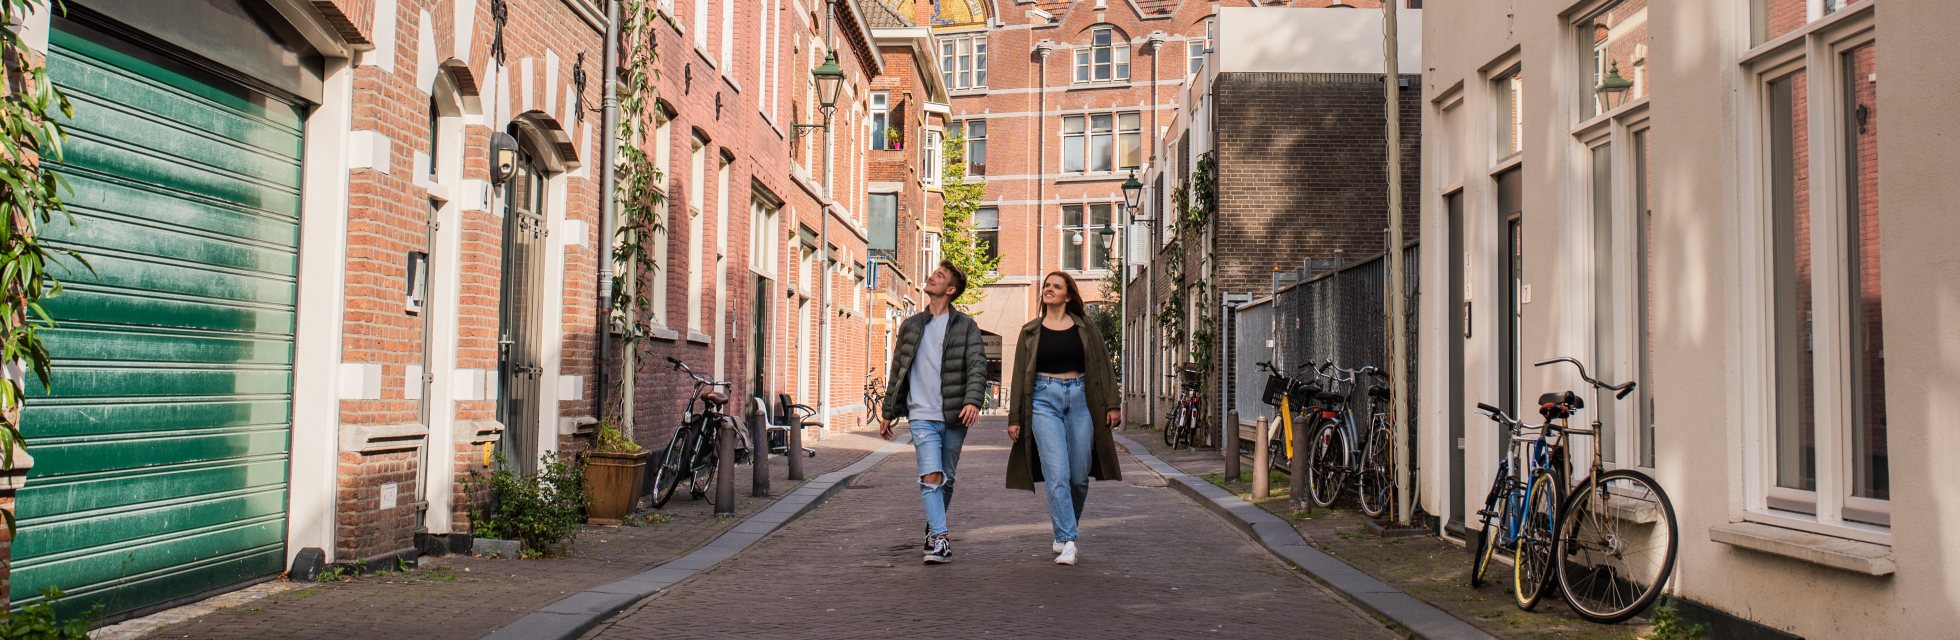 Wandelen in binnenstad van Den Haag